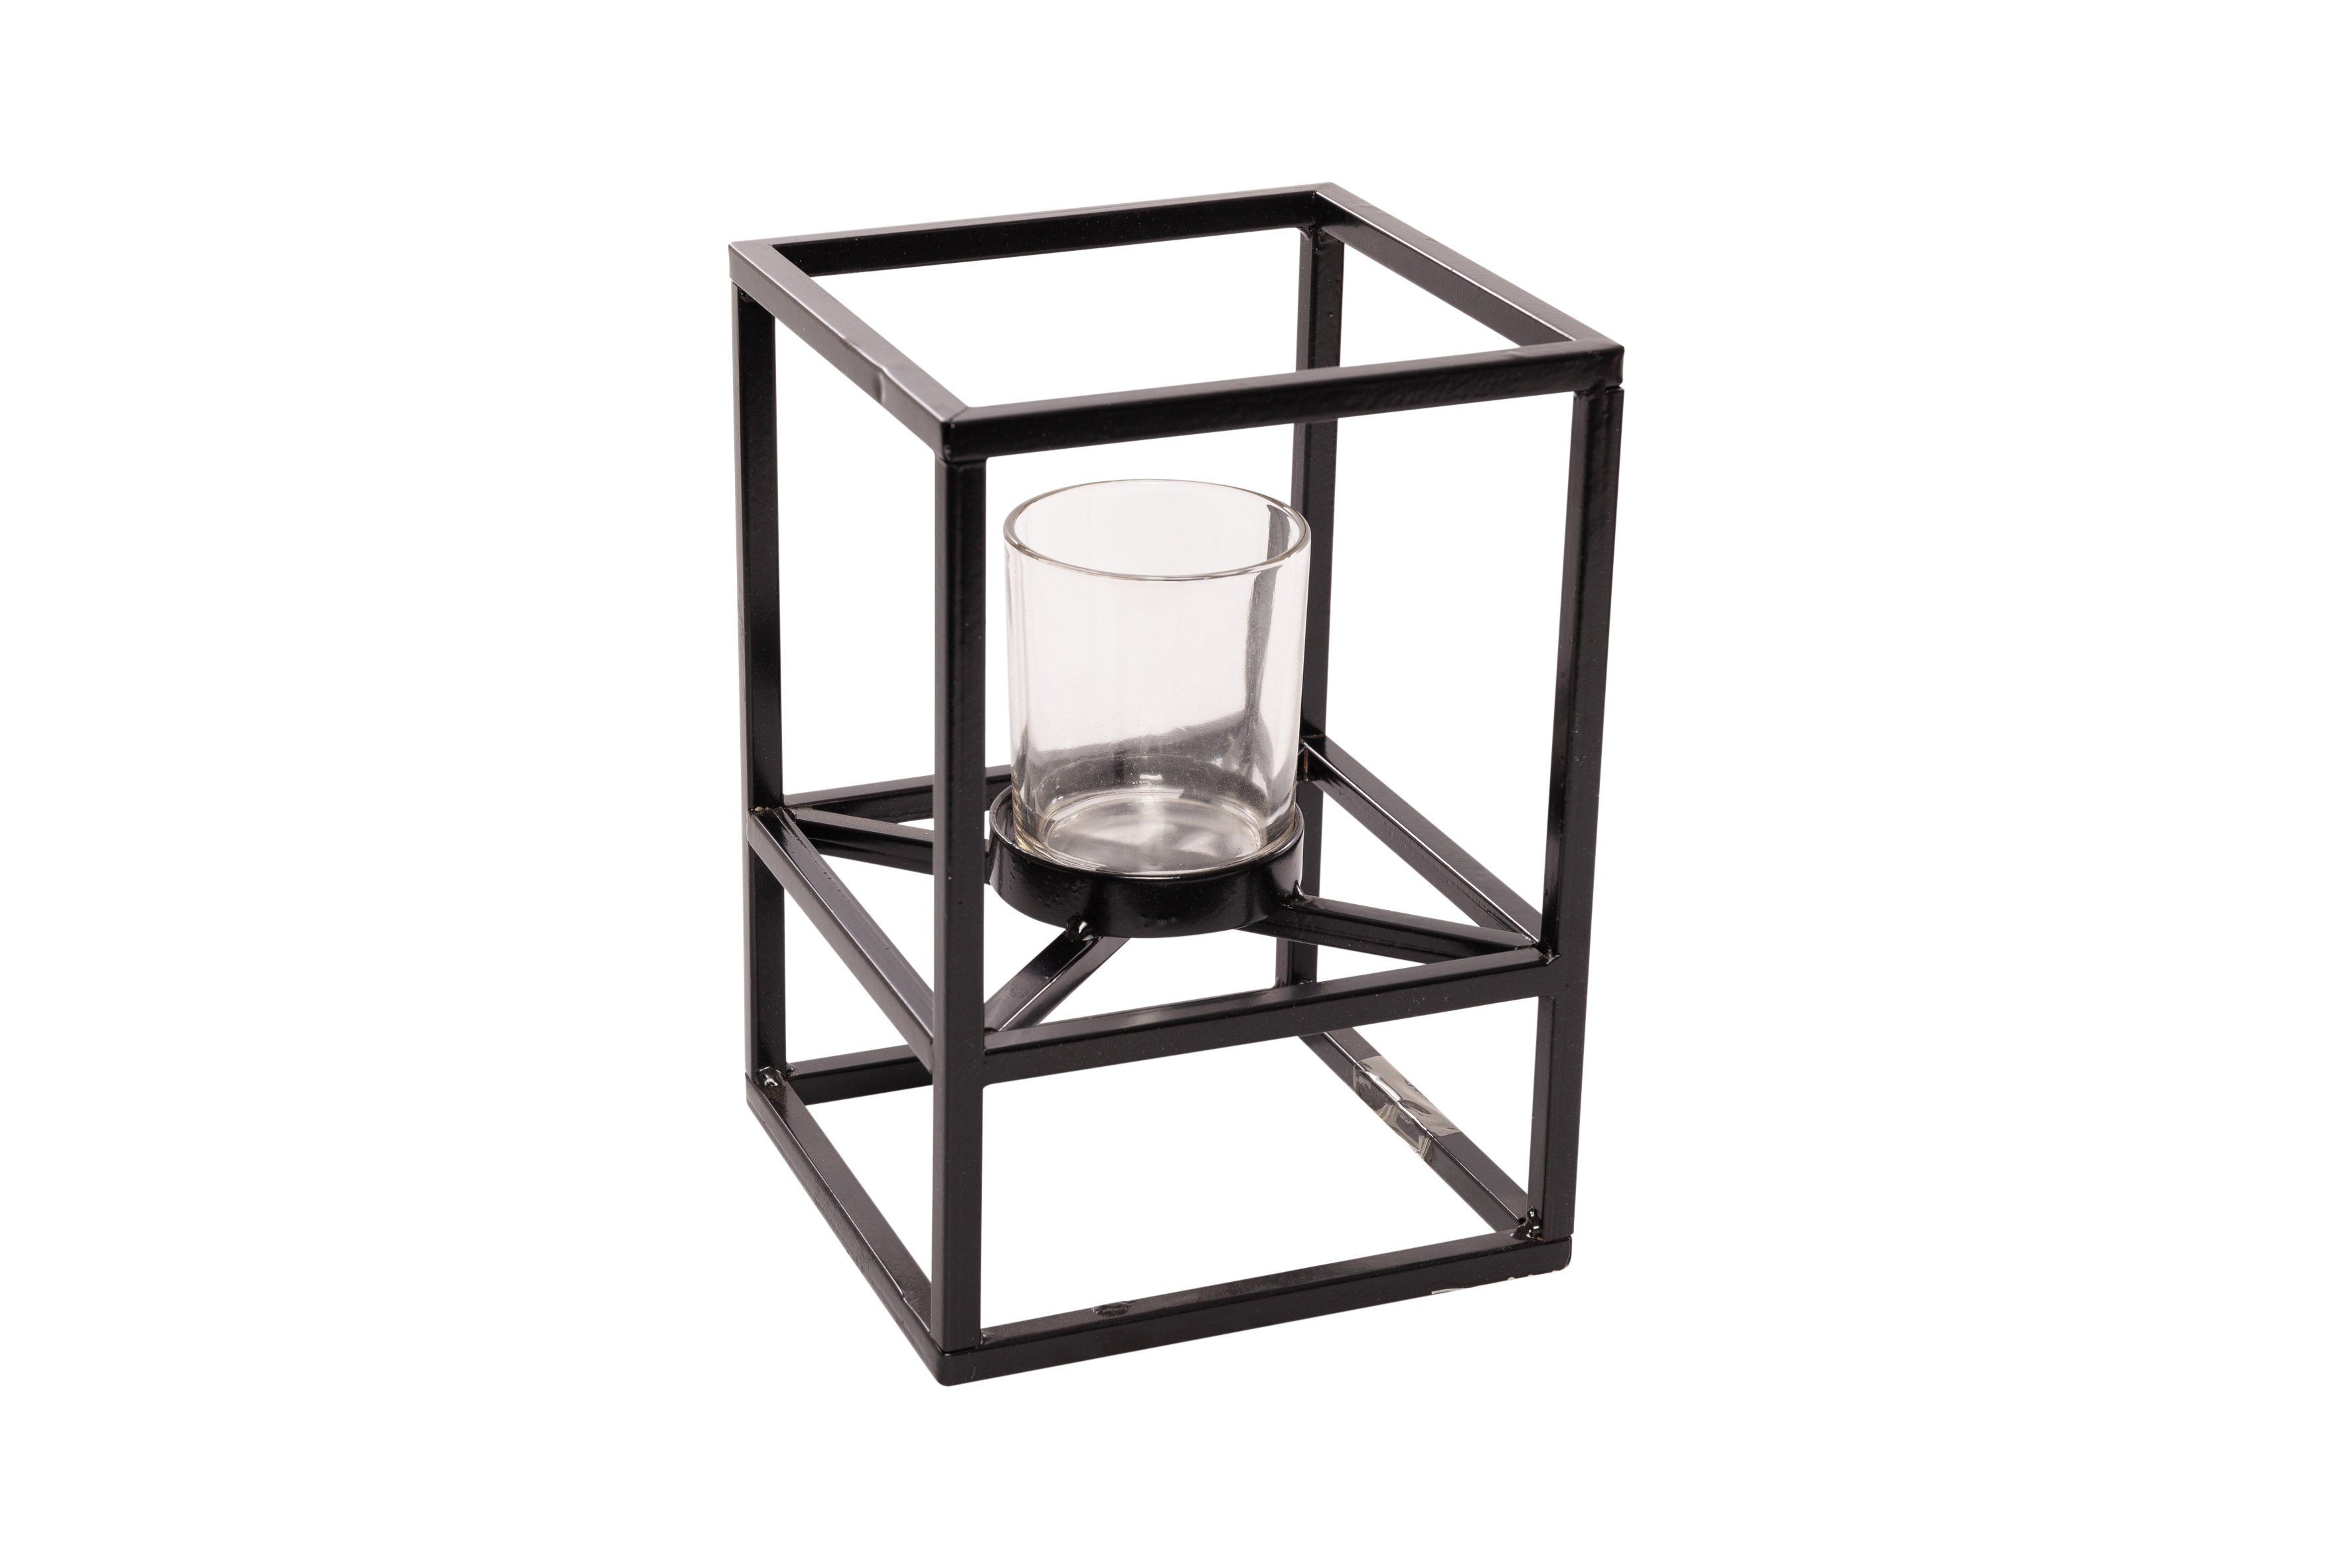 Parts4Living Teelichthalter Teelichtrahmen aus Metall Kerzenhalter Teelichtschale mit Glaseinsatz schwarz 16x16x22 cm, stilvolles Design